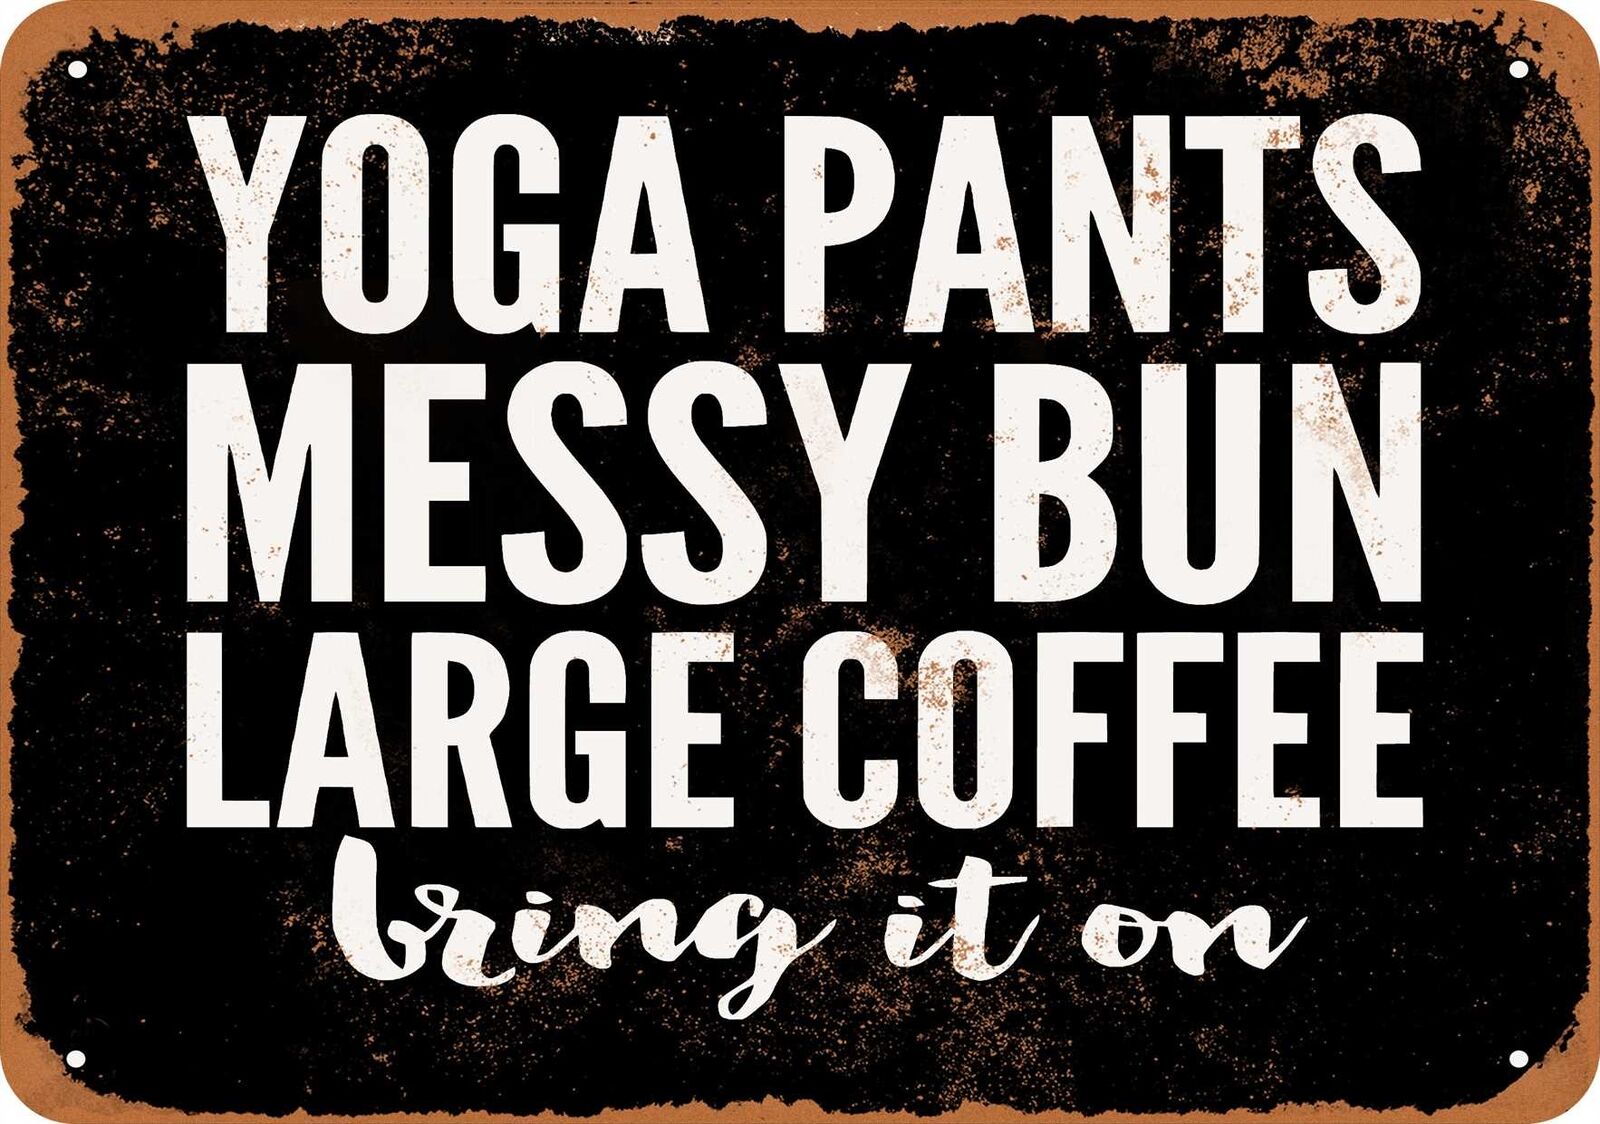 Metal Sign - Yoga Pants Messy Bun Large Coffee Bring It On - Vintage Look